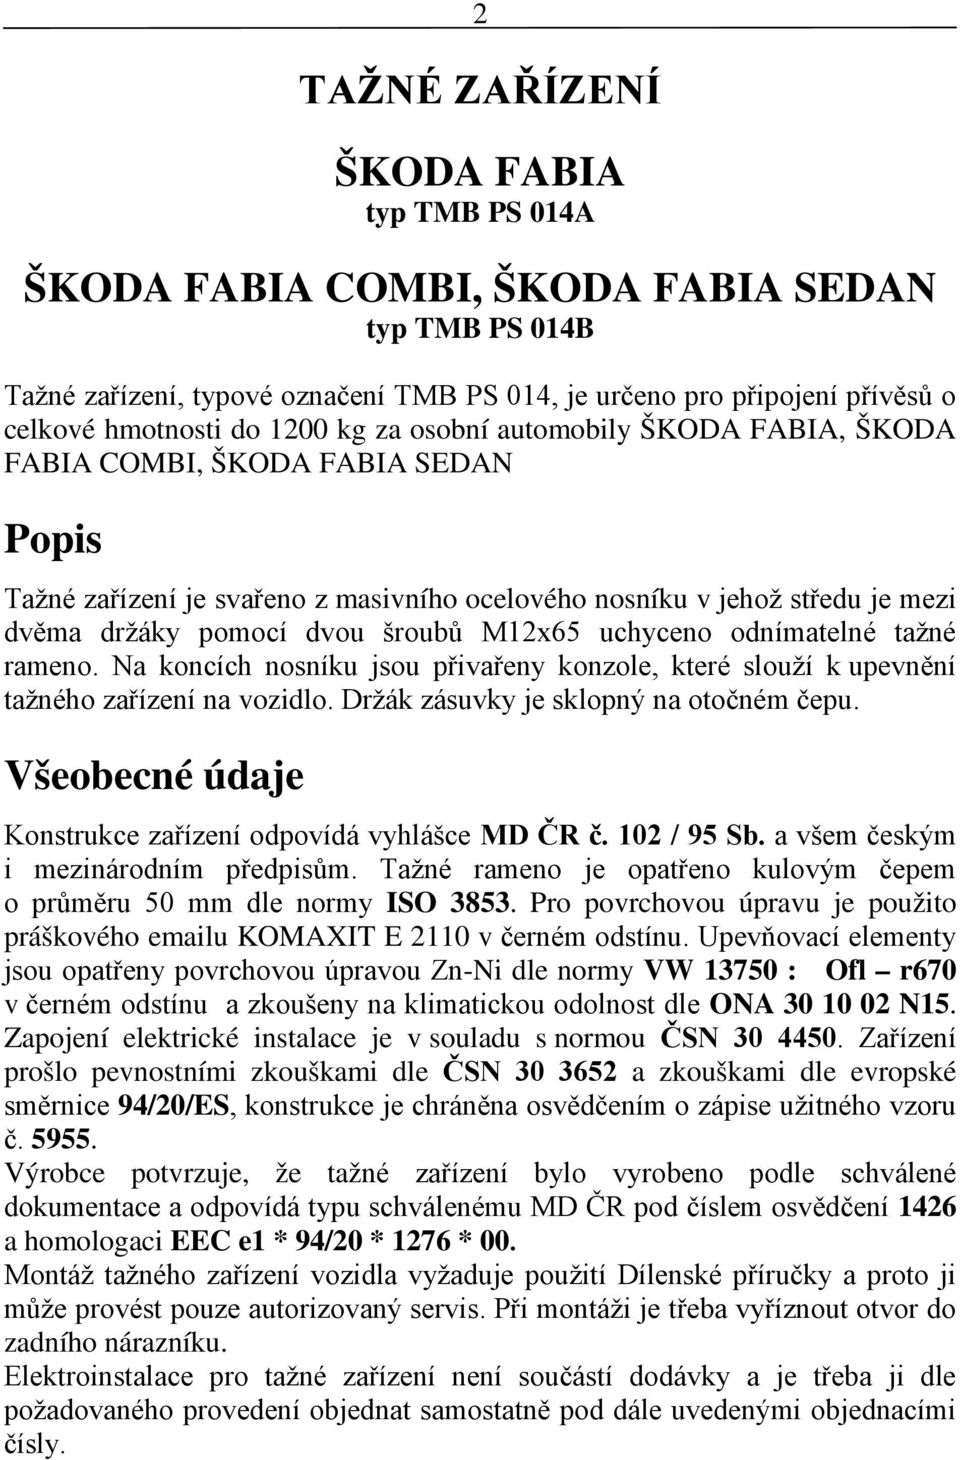 ŠKODA FABIA typ TMB PS 014A - PDF Stažení zdarma